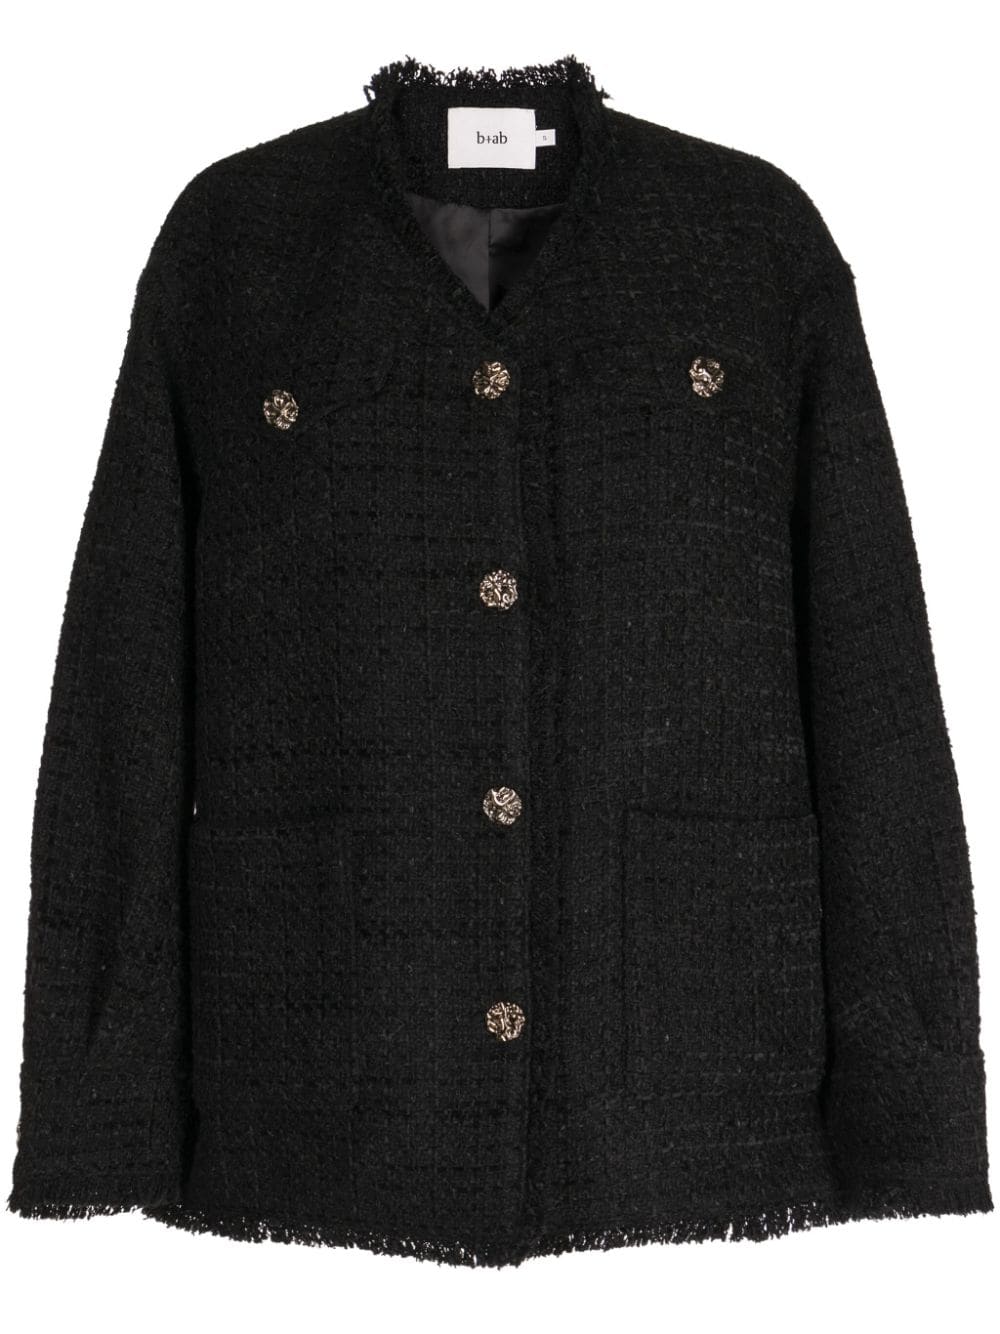 b+ab tweed button-up jacket - Black von b+ab